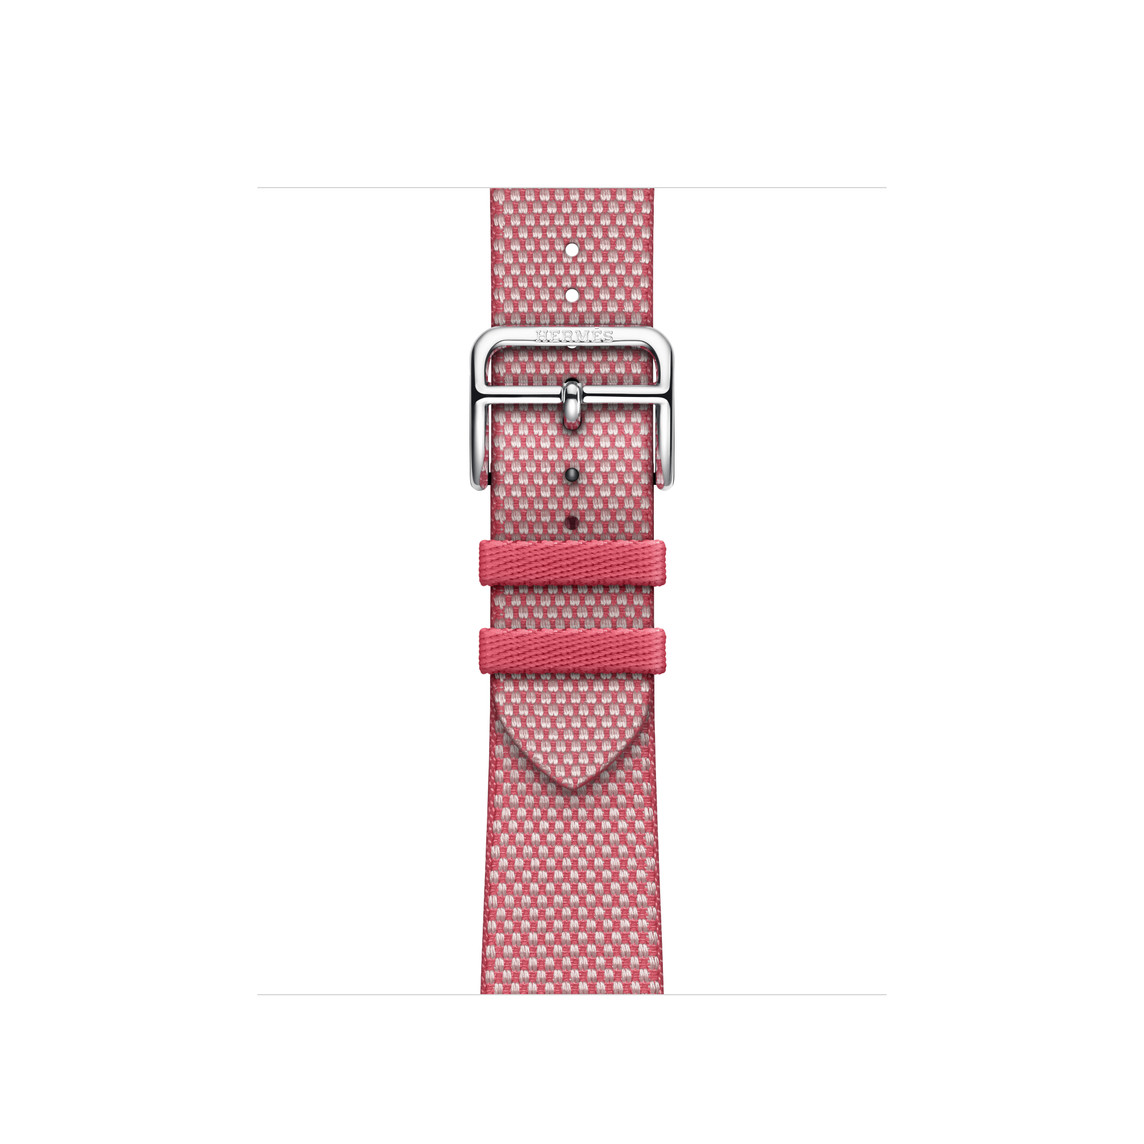 Bracelet Simple Tour Toile H Framboise/Écru (rose), en matériau tissé avec boucle en acier inoxydable argent.